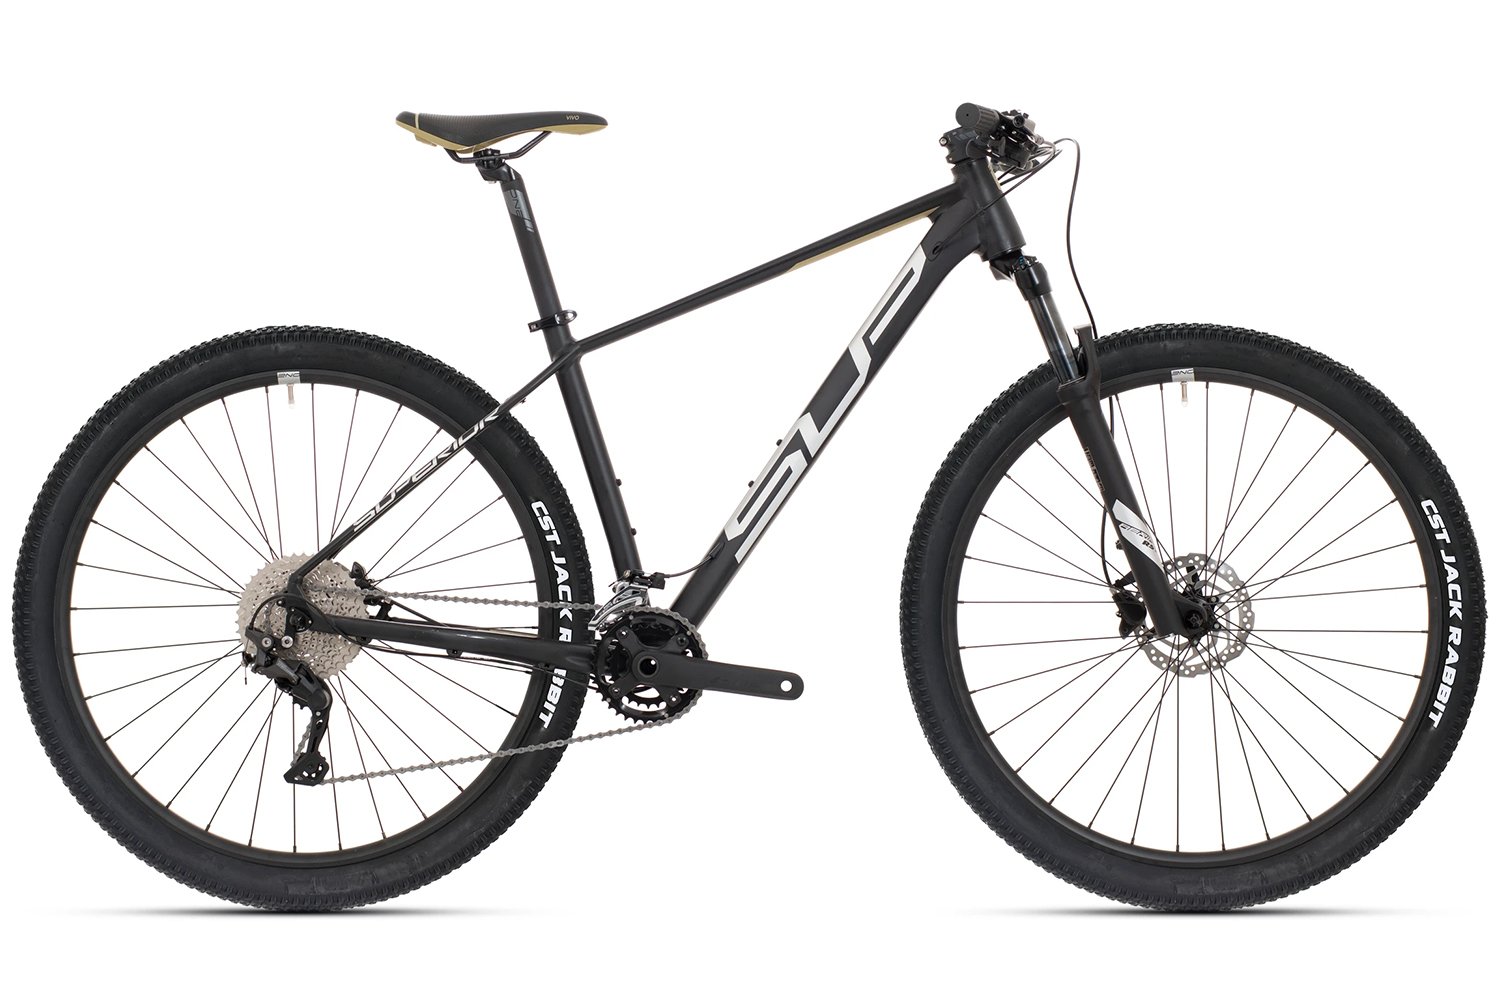 Superior XC 879 Black/Silver/Olive, Terrengsykkel 18 Kampanjer 15% studentrabatt på utvalgte sykler og utstyr